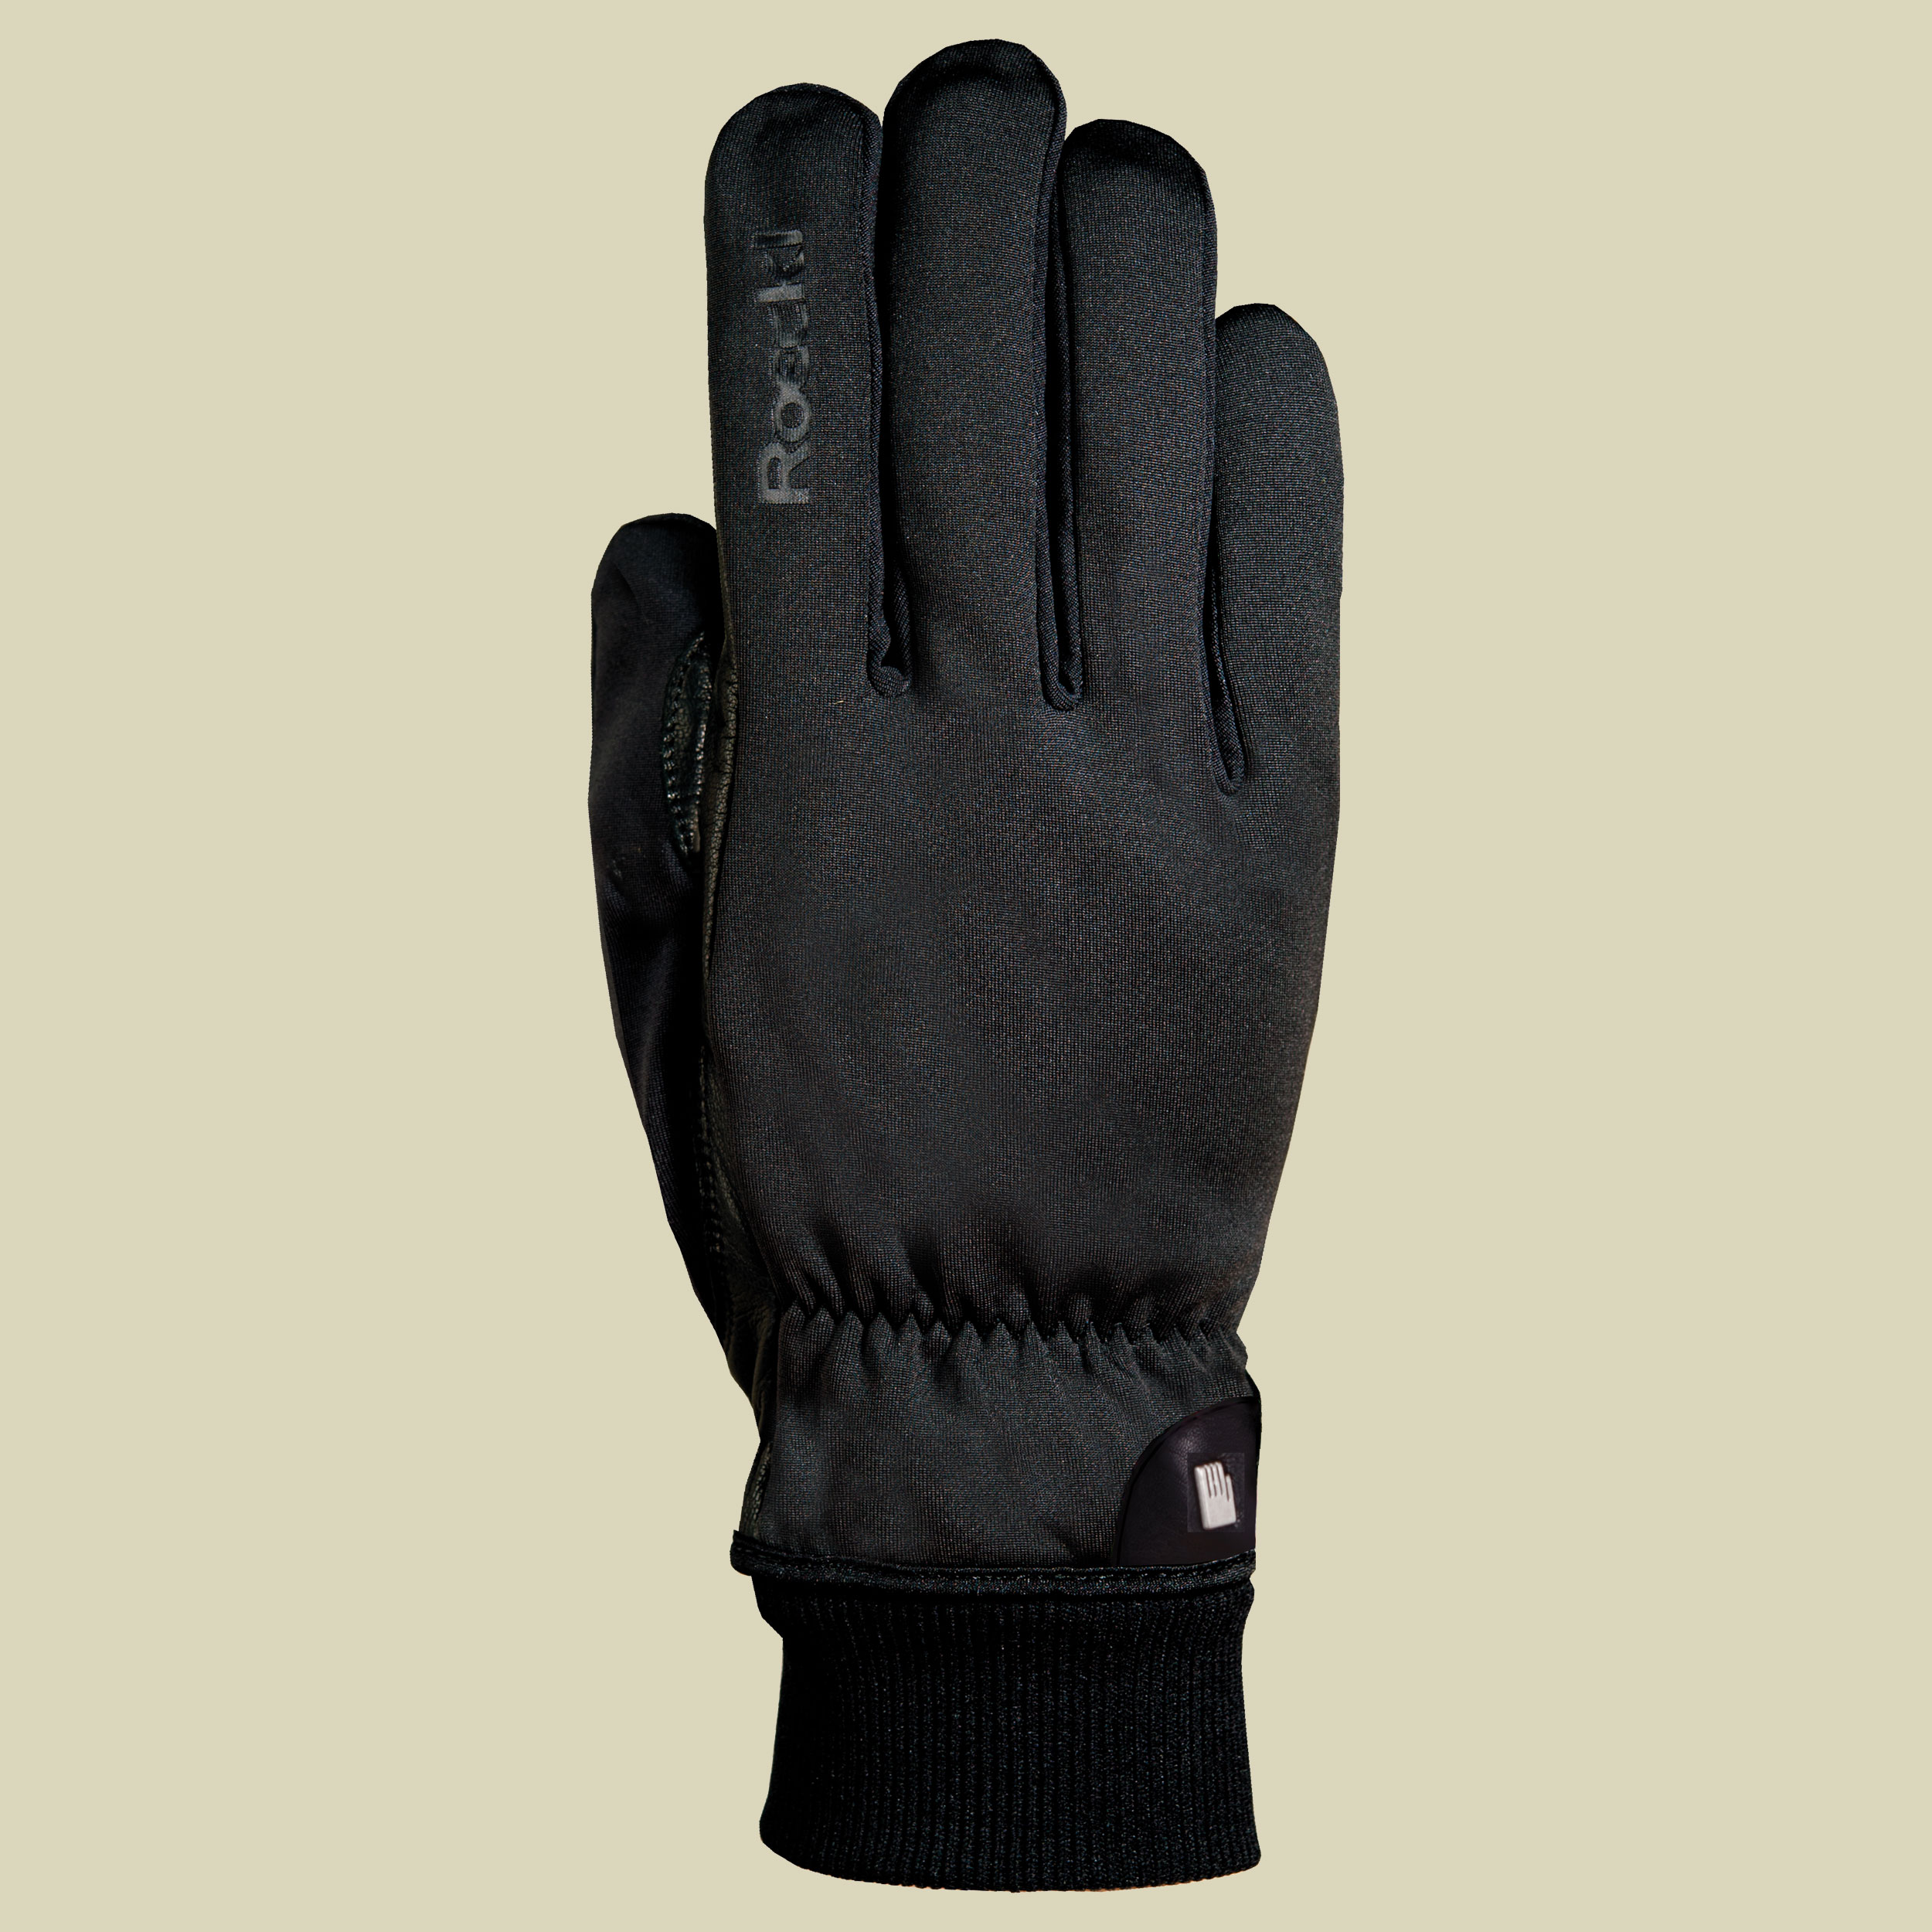 Kaina Multisport Handschuh Größe 6,5 Farbe schwarz